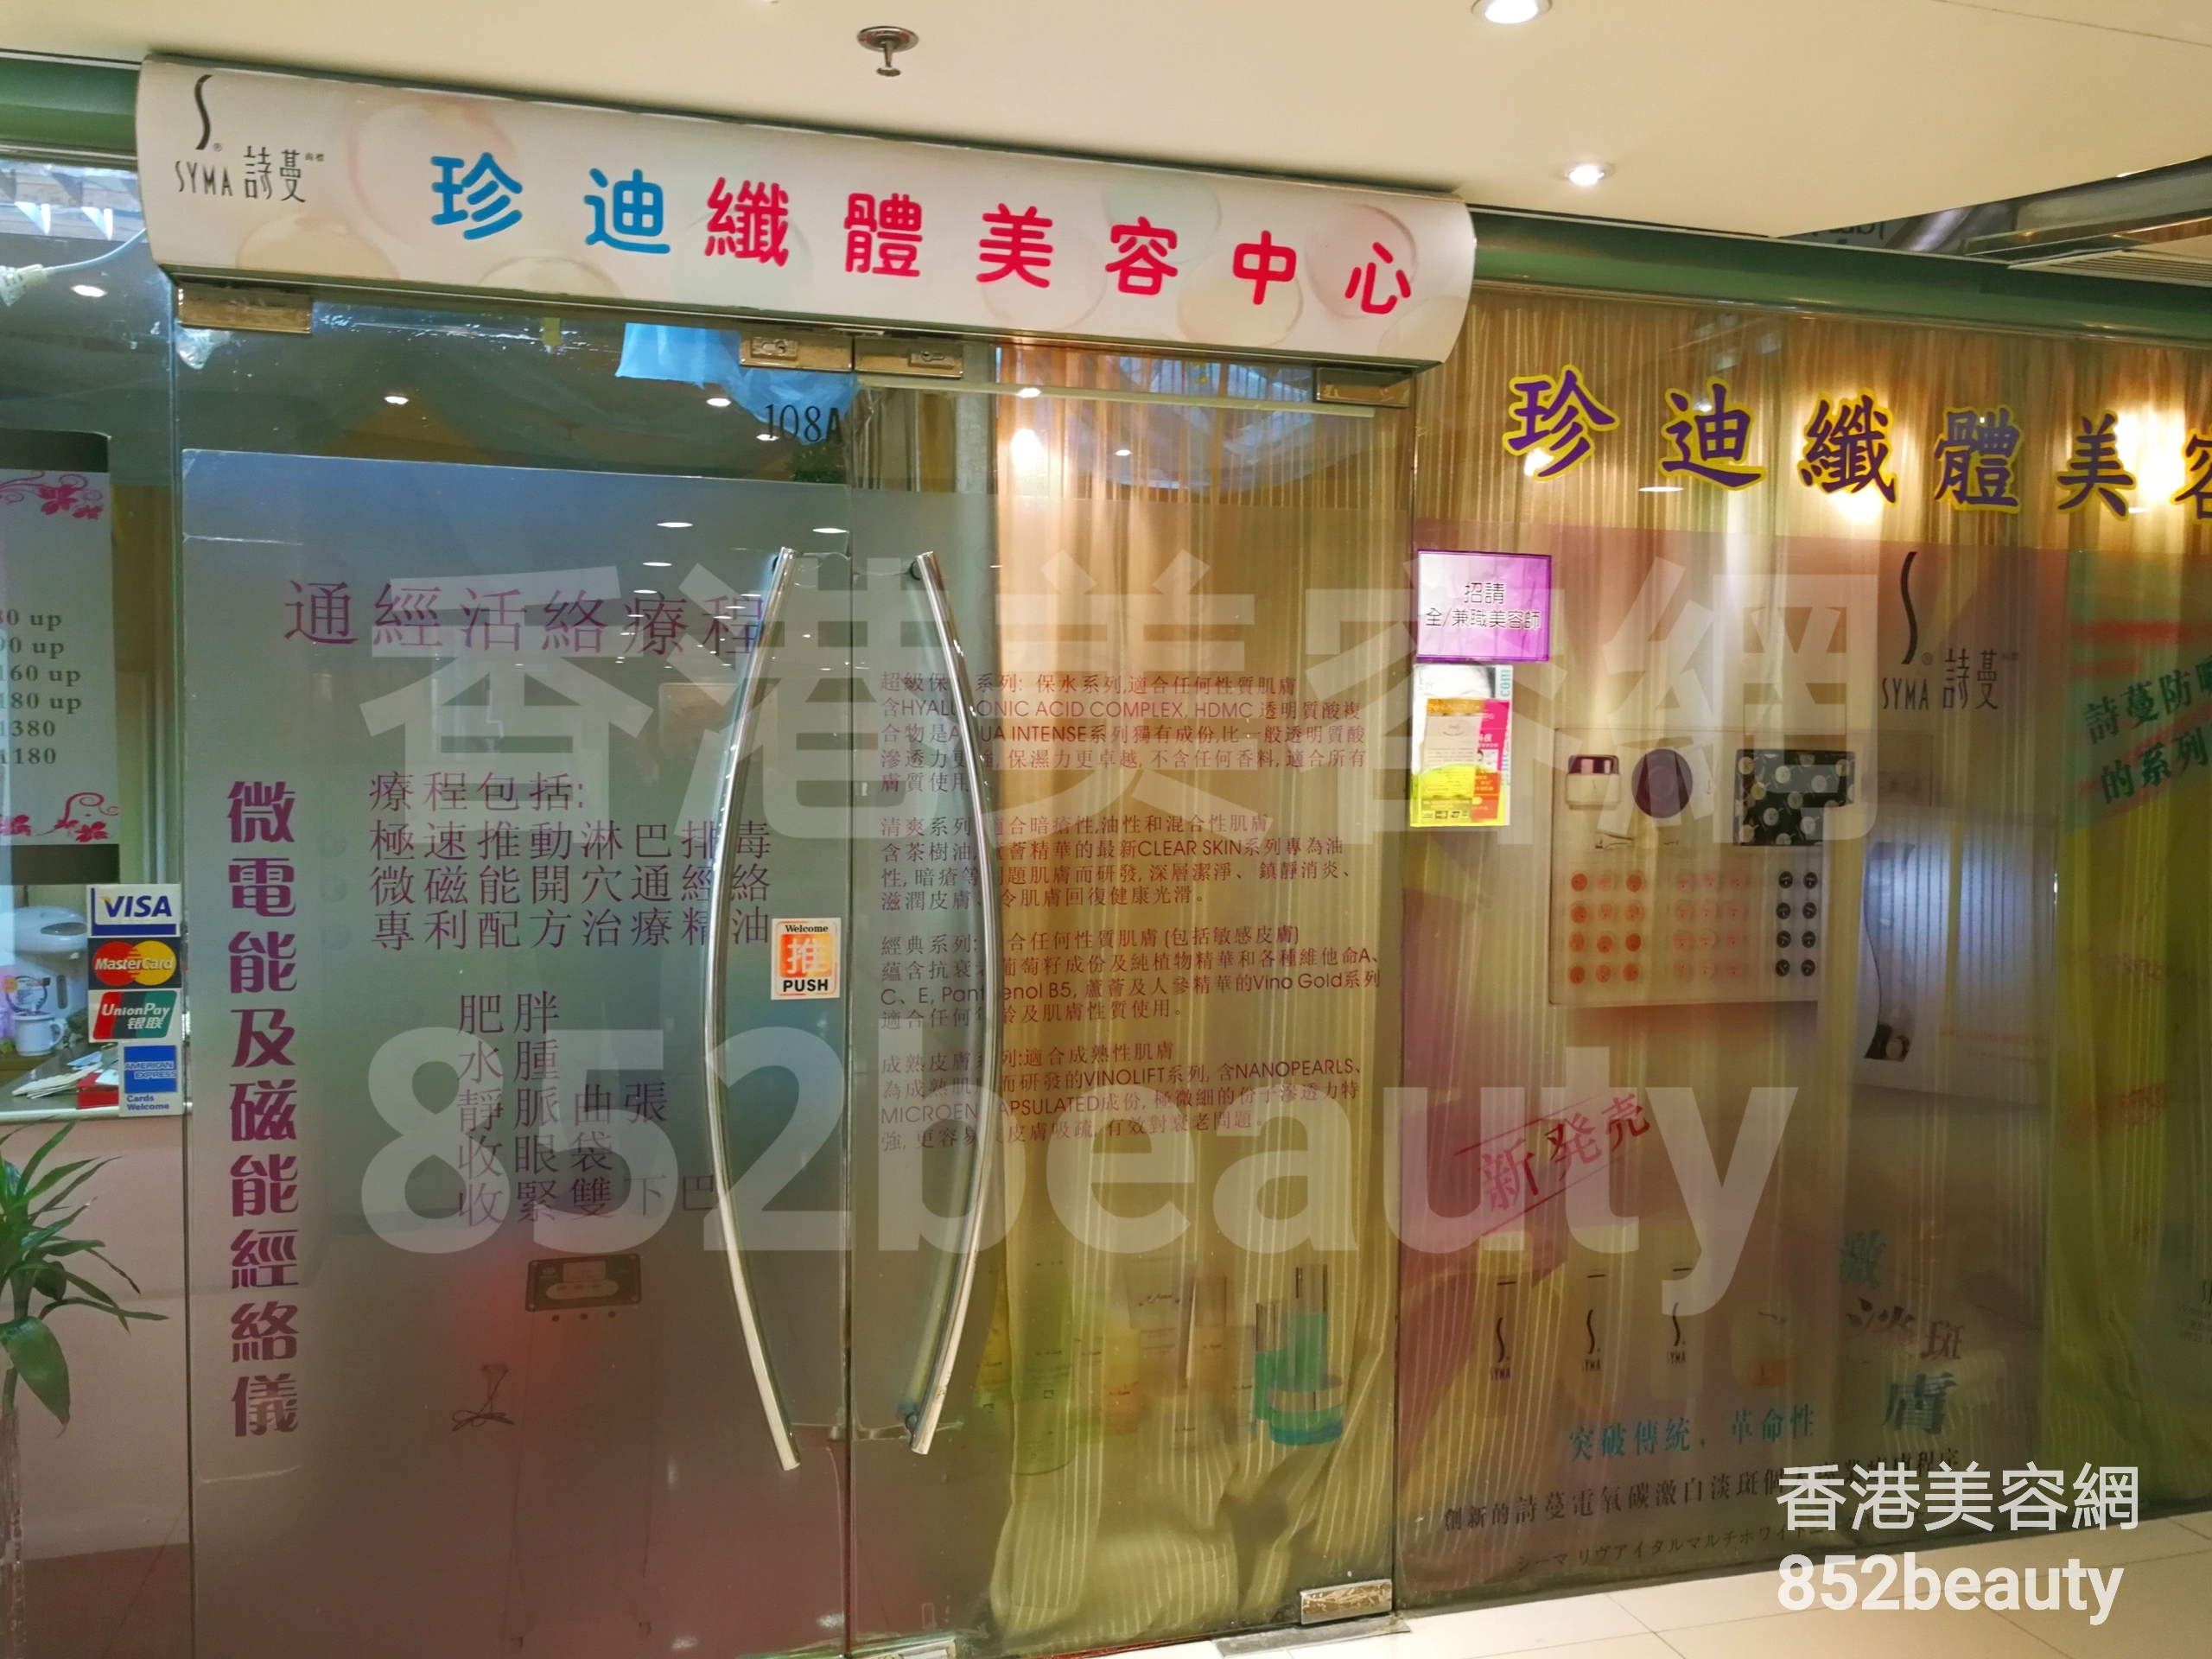 香港美容網 Hong Kong Beauty Salon 美容院 / 美容師: 珍迪纖體美容中心